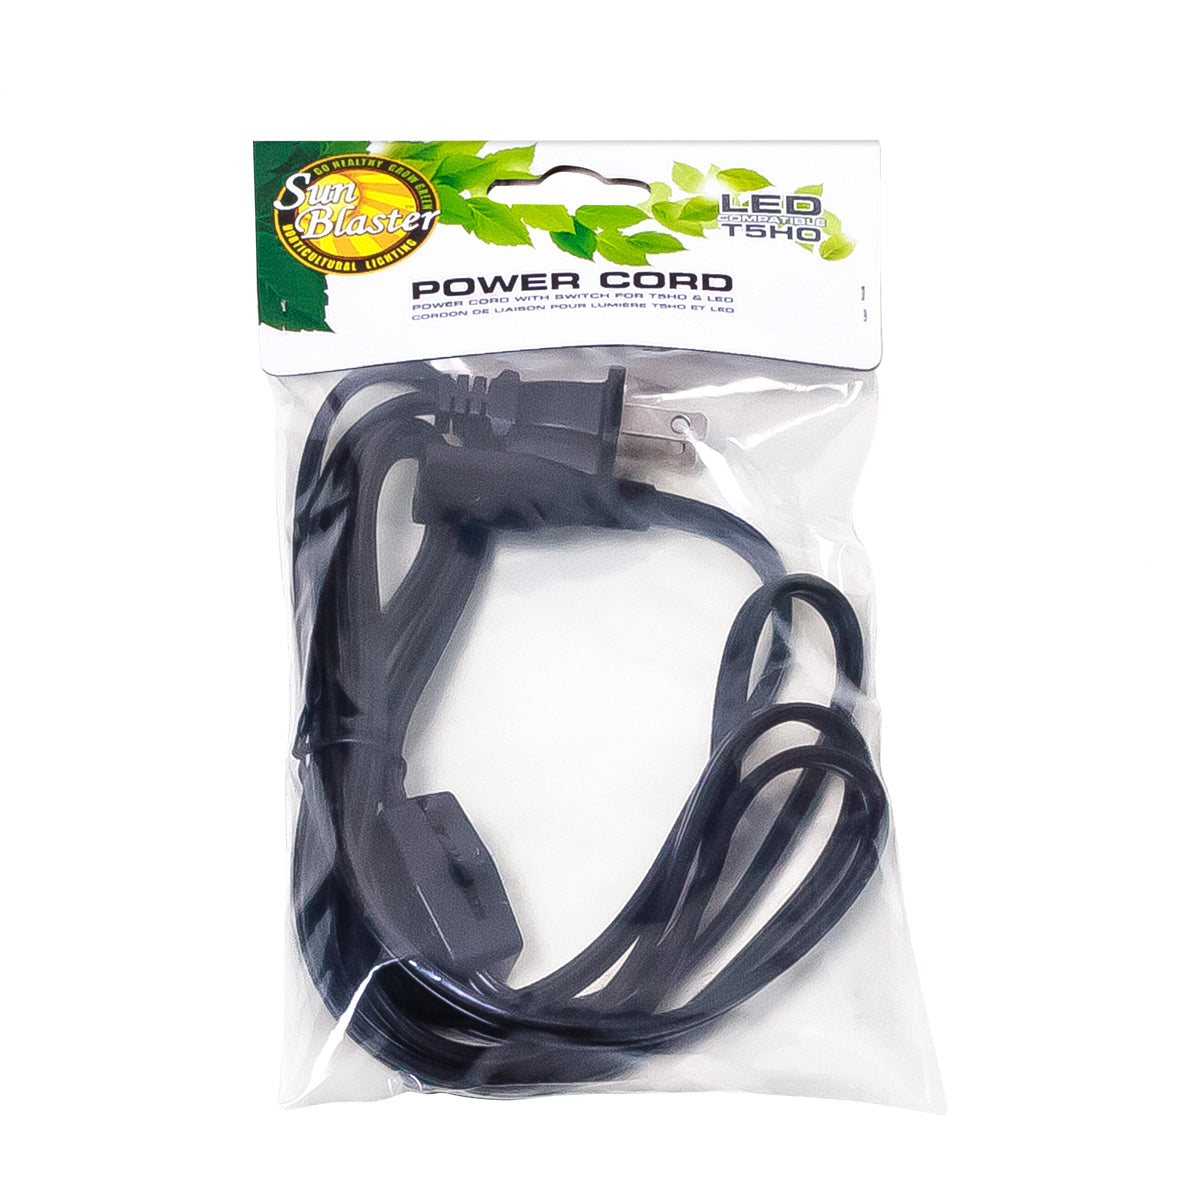 Product Image:Cordon d'alimentation SunBlaster avec interrupteur On-Off - 6'